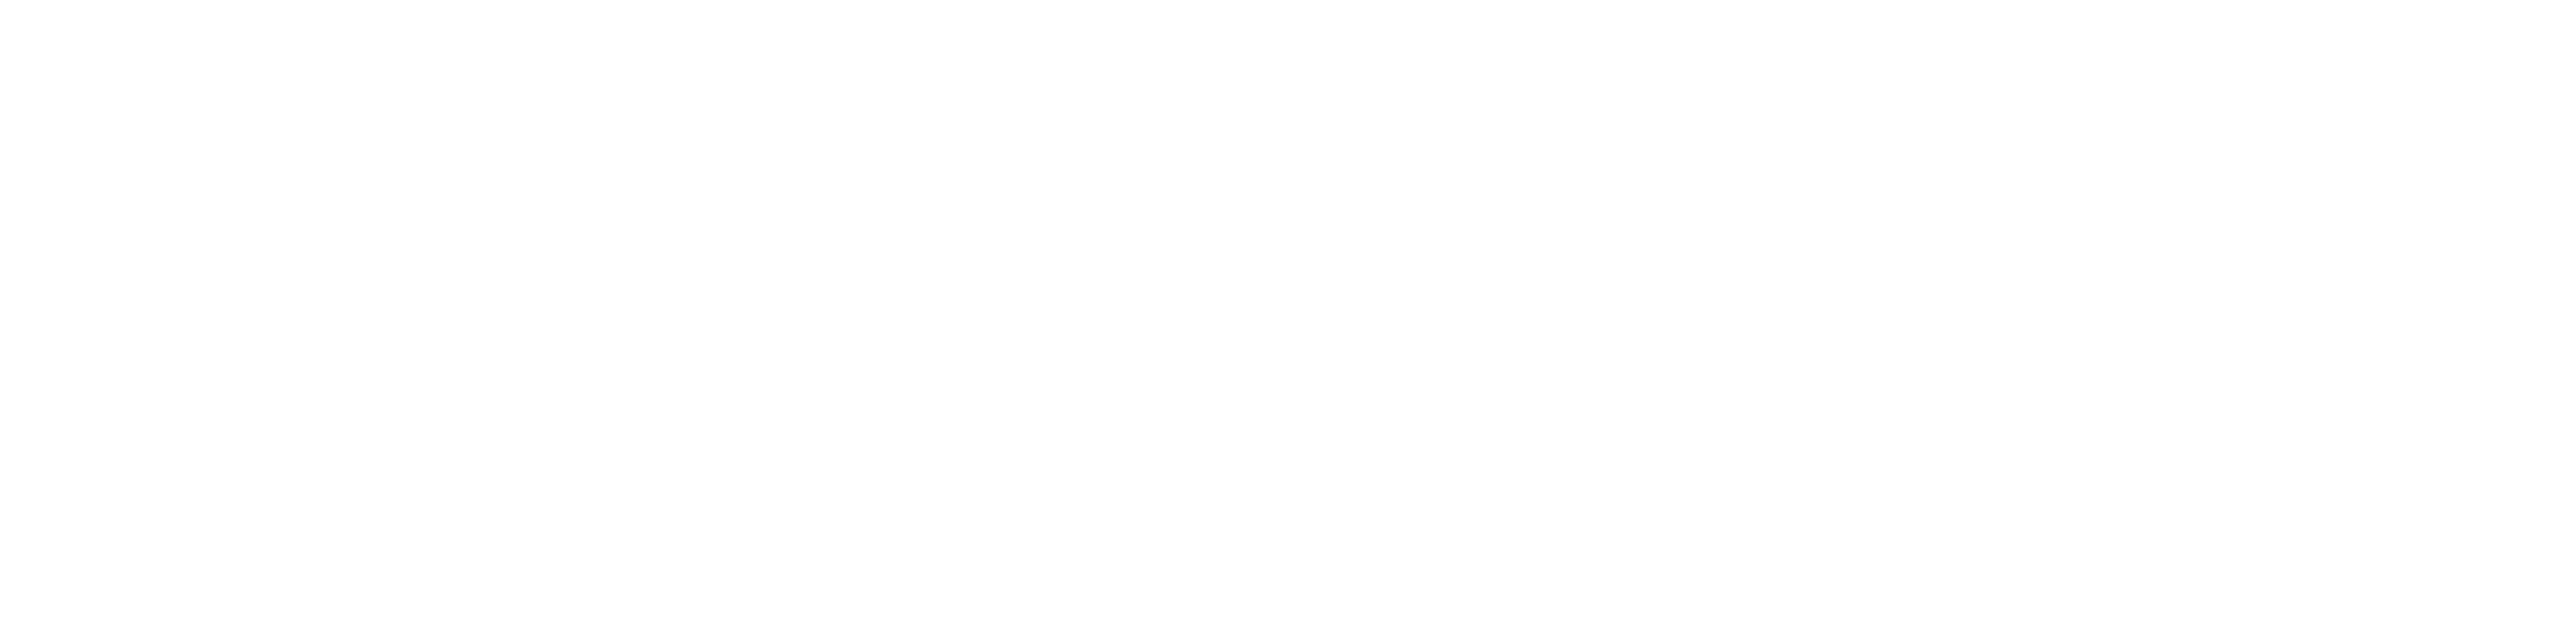 accugroup logo